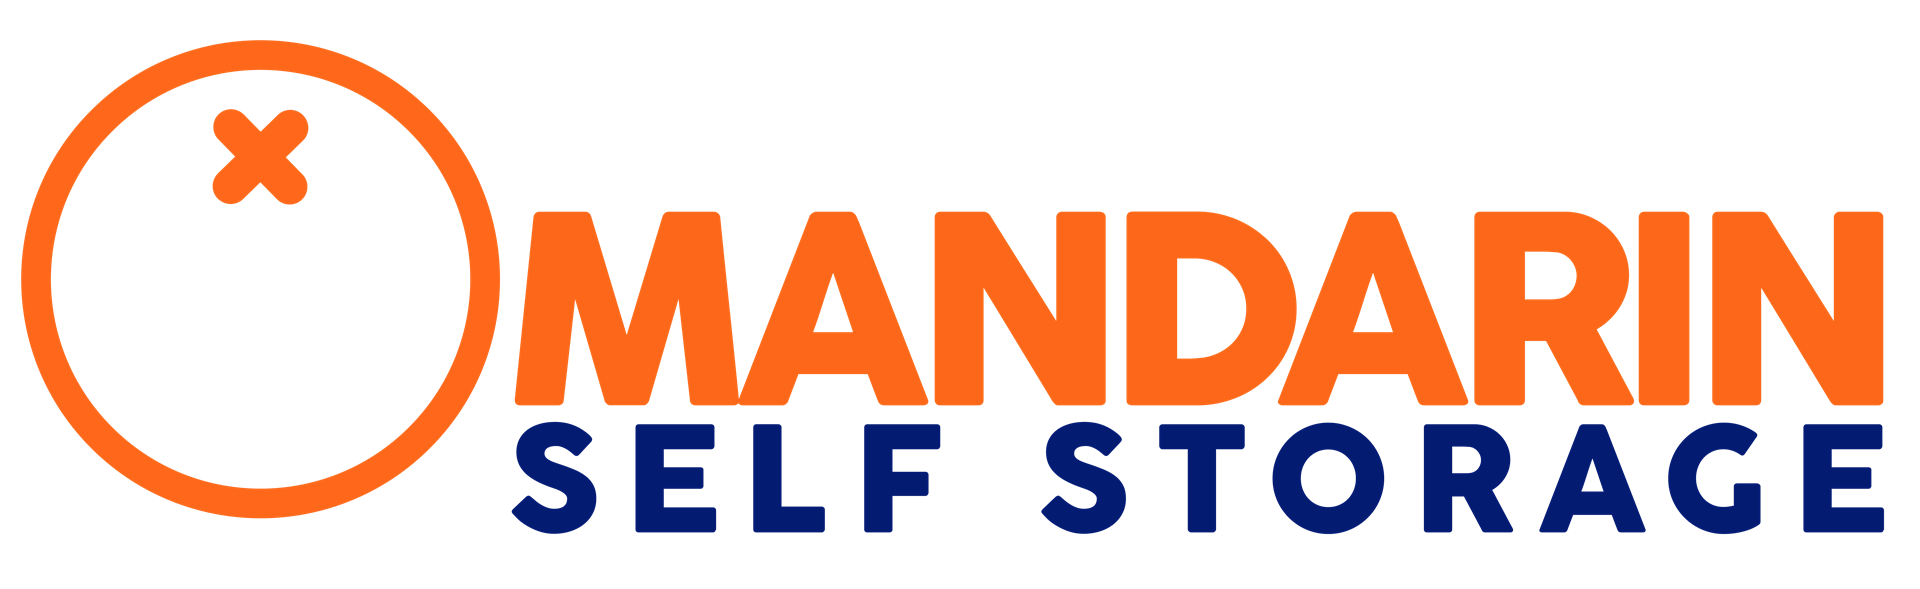 Mandarin Self Storage logo.png